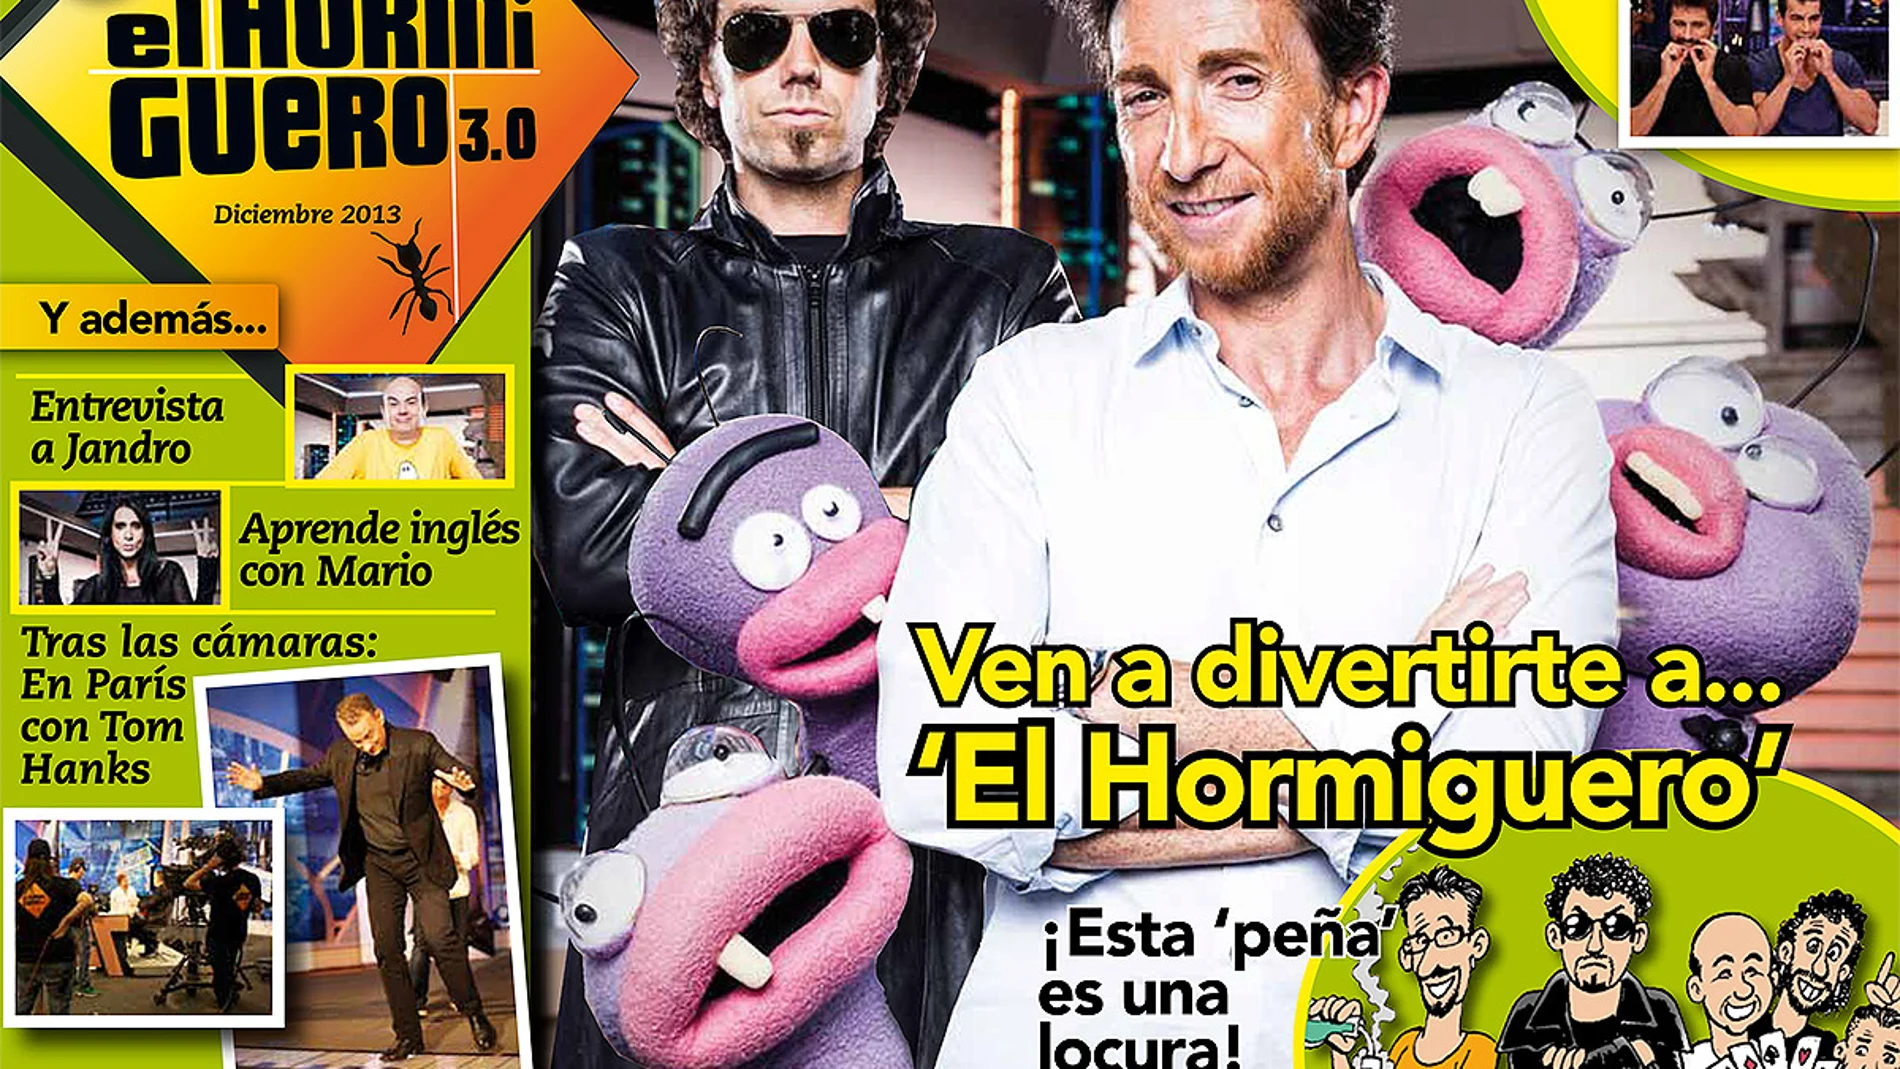 Portada Diciembre Revista El Hormiguero 3.0